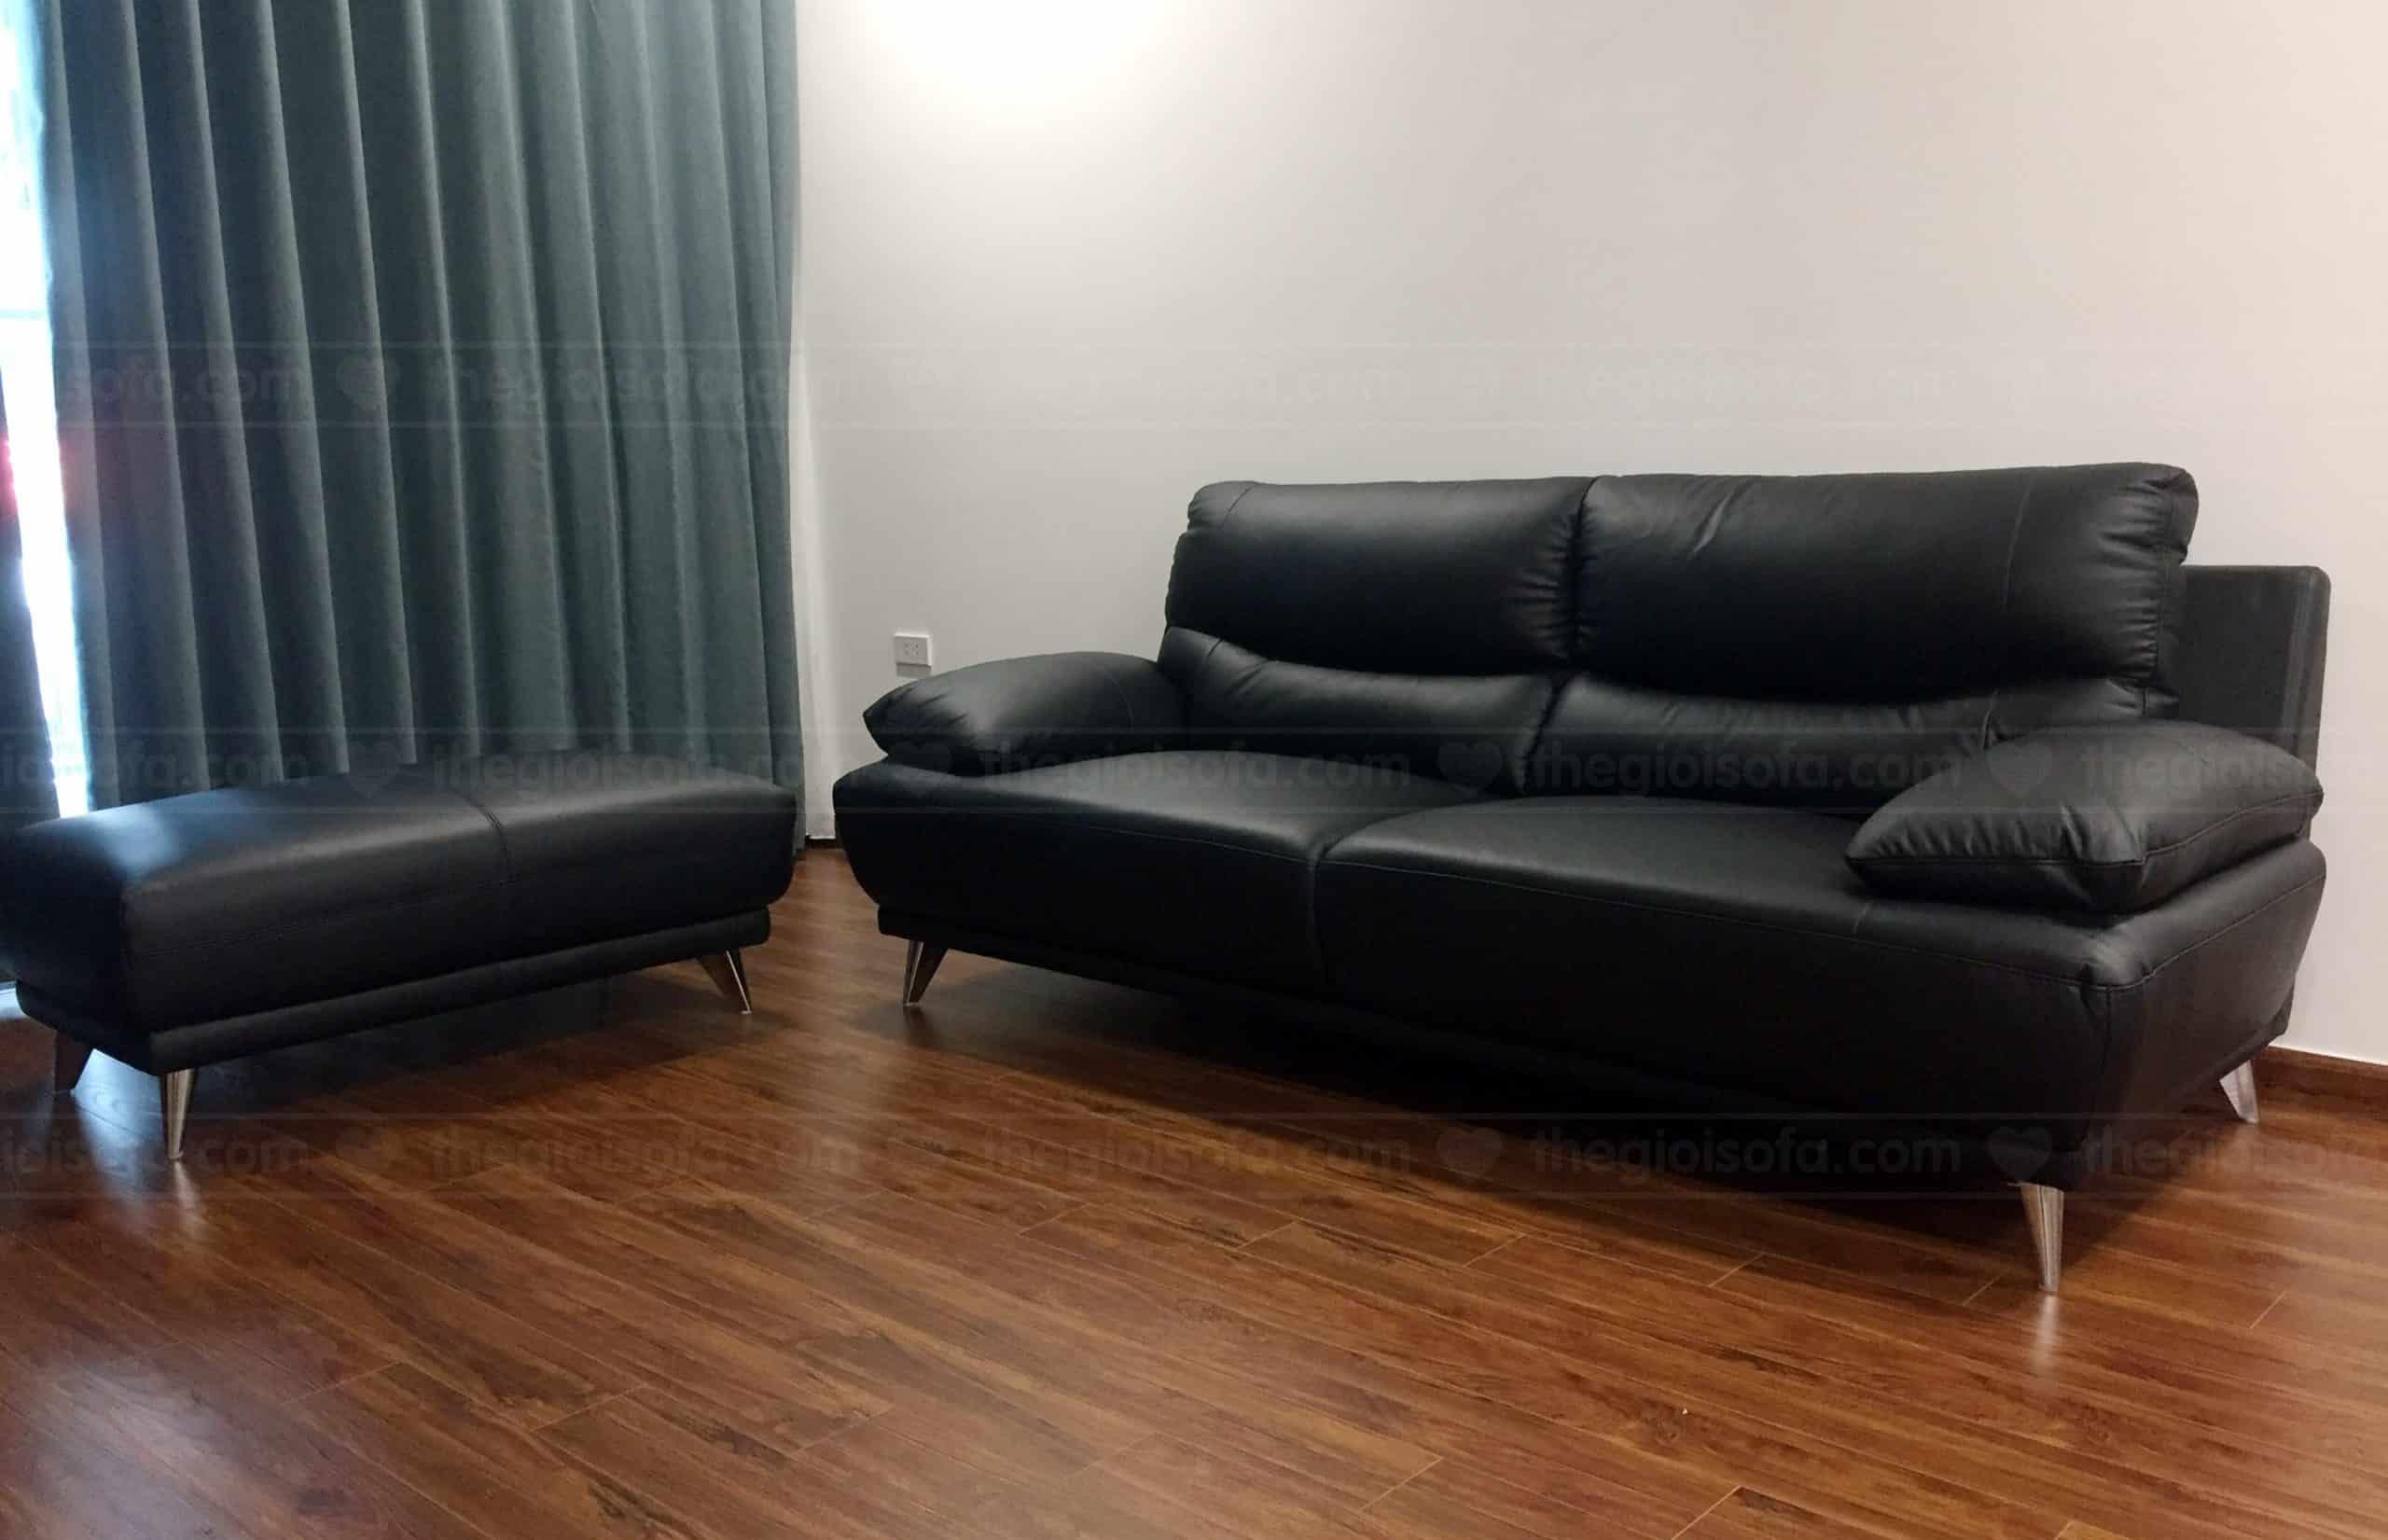 Giao sofa băng da cho chị Nhung – Công ty TNHH Hồng Dương